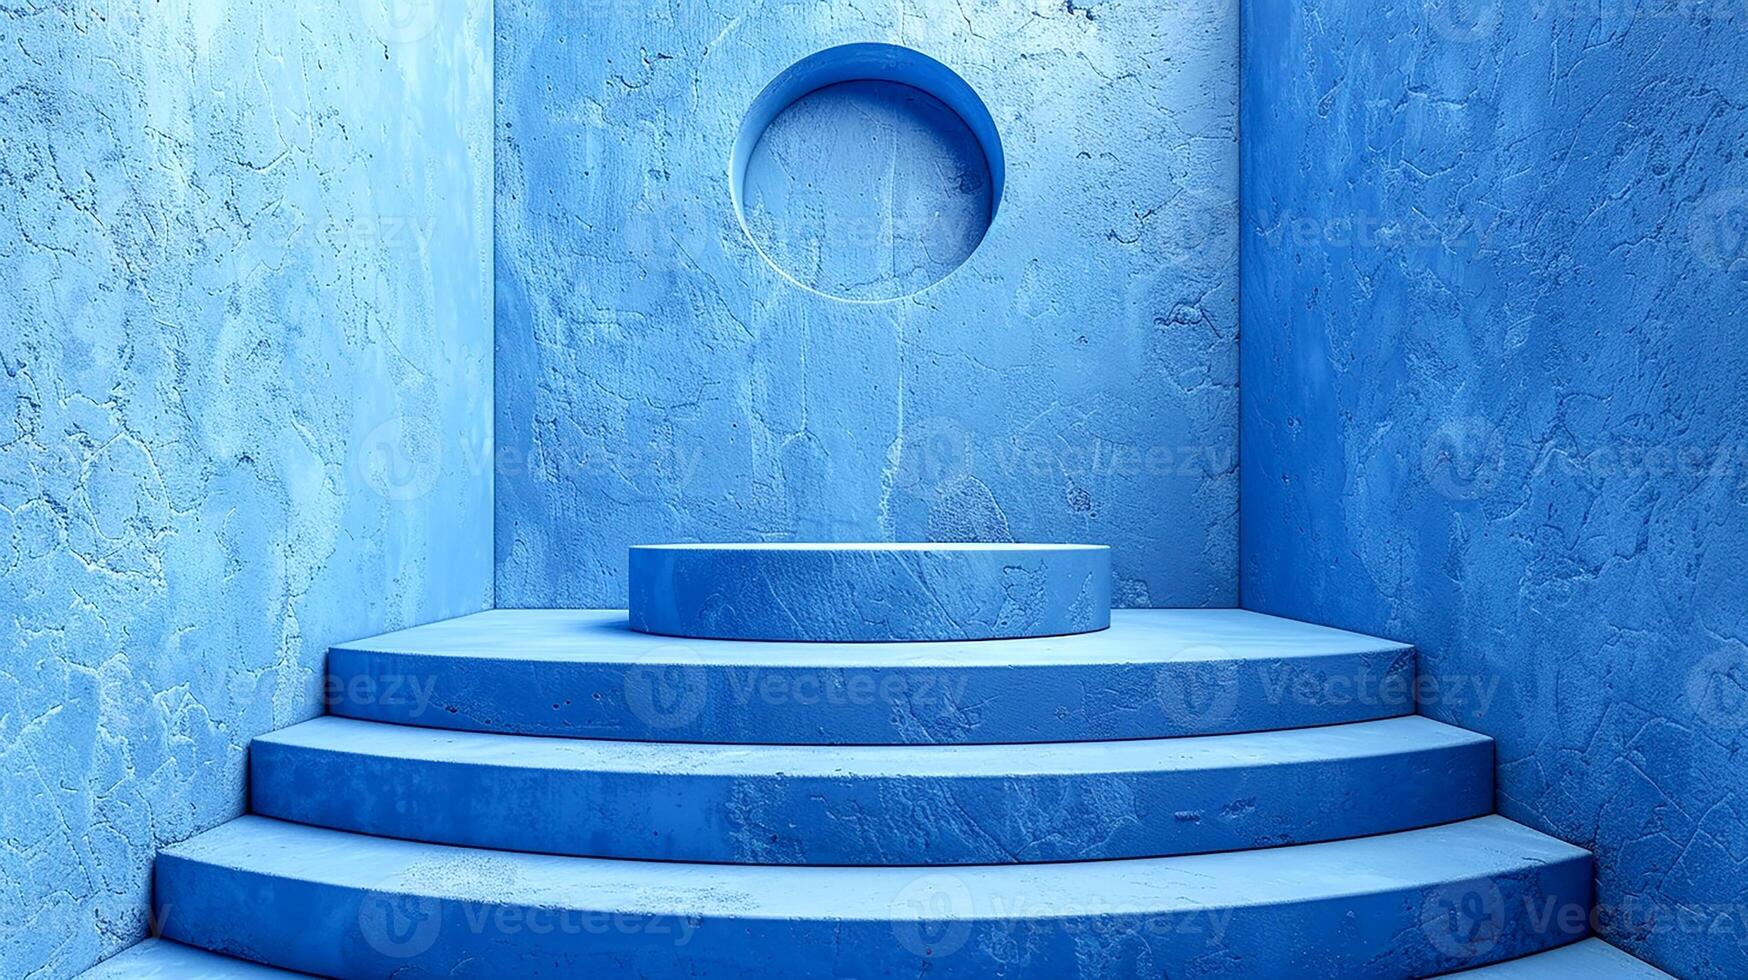 blå vägg med trappa och cirkulär hål foto